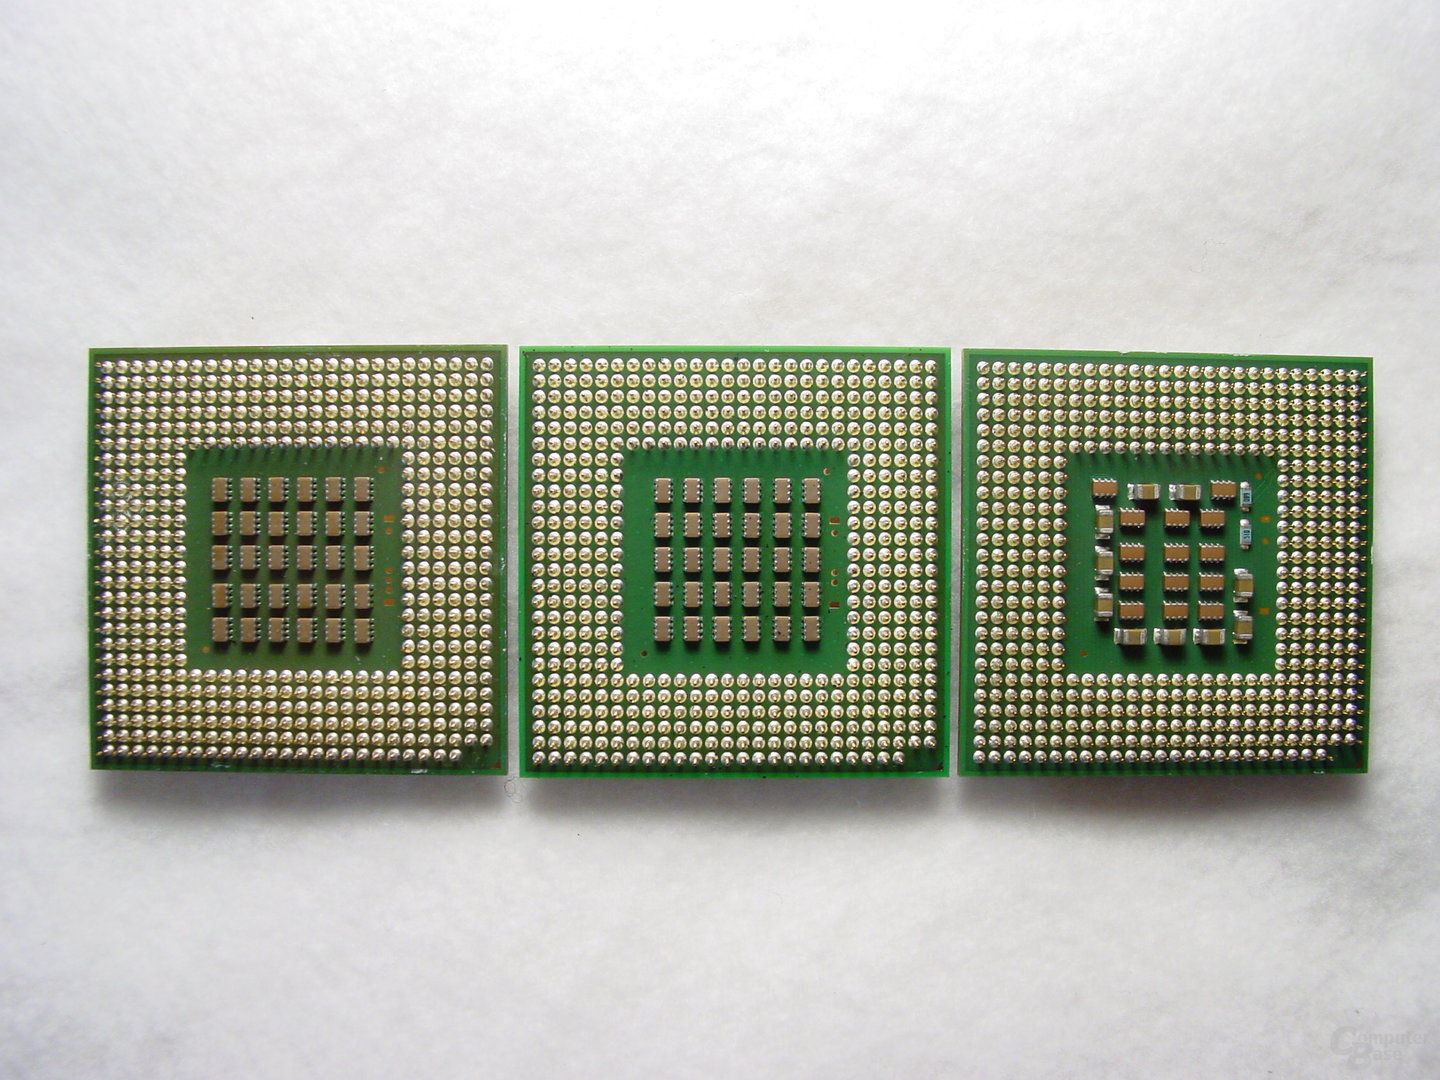 v.l.n.r.: Pentium 4 Extreme Edition 3,4 GHz, Pentium 4 3,4 GHz "Northwood", Pentium 4 3,2 GHz "Prescott"